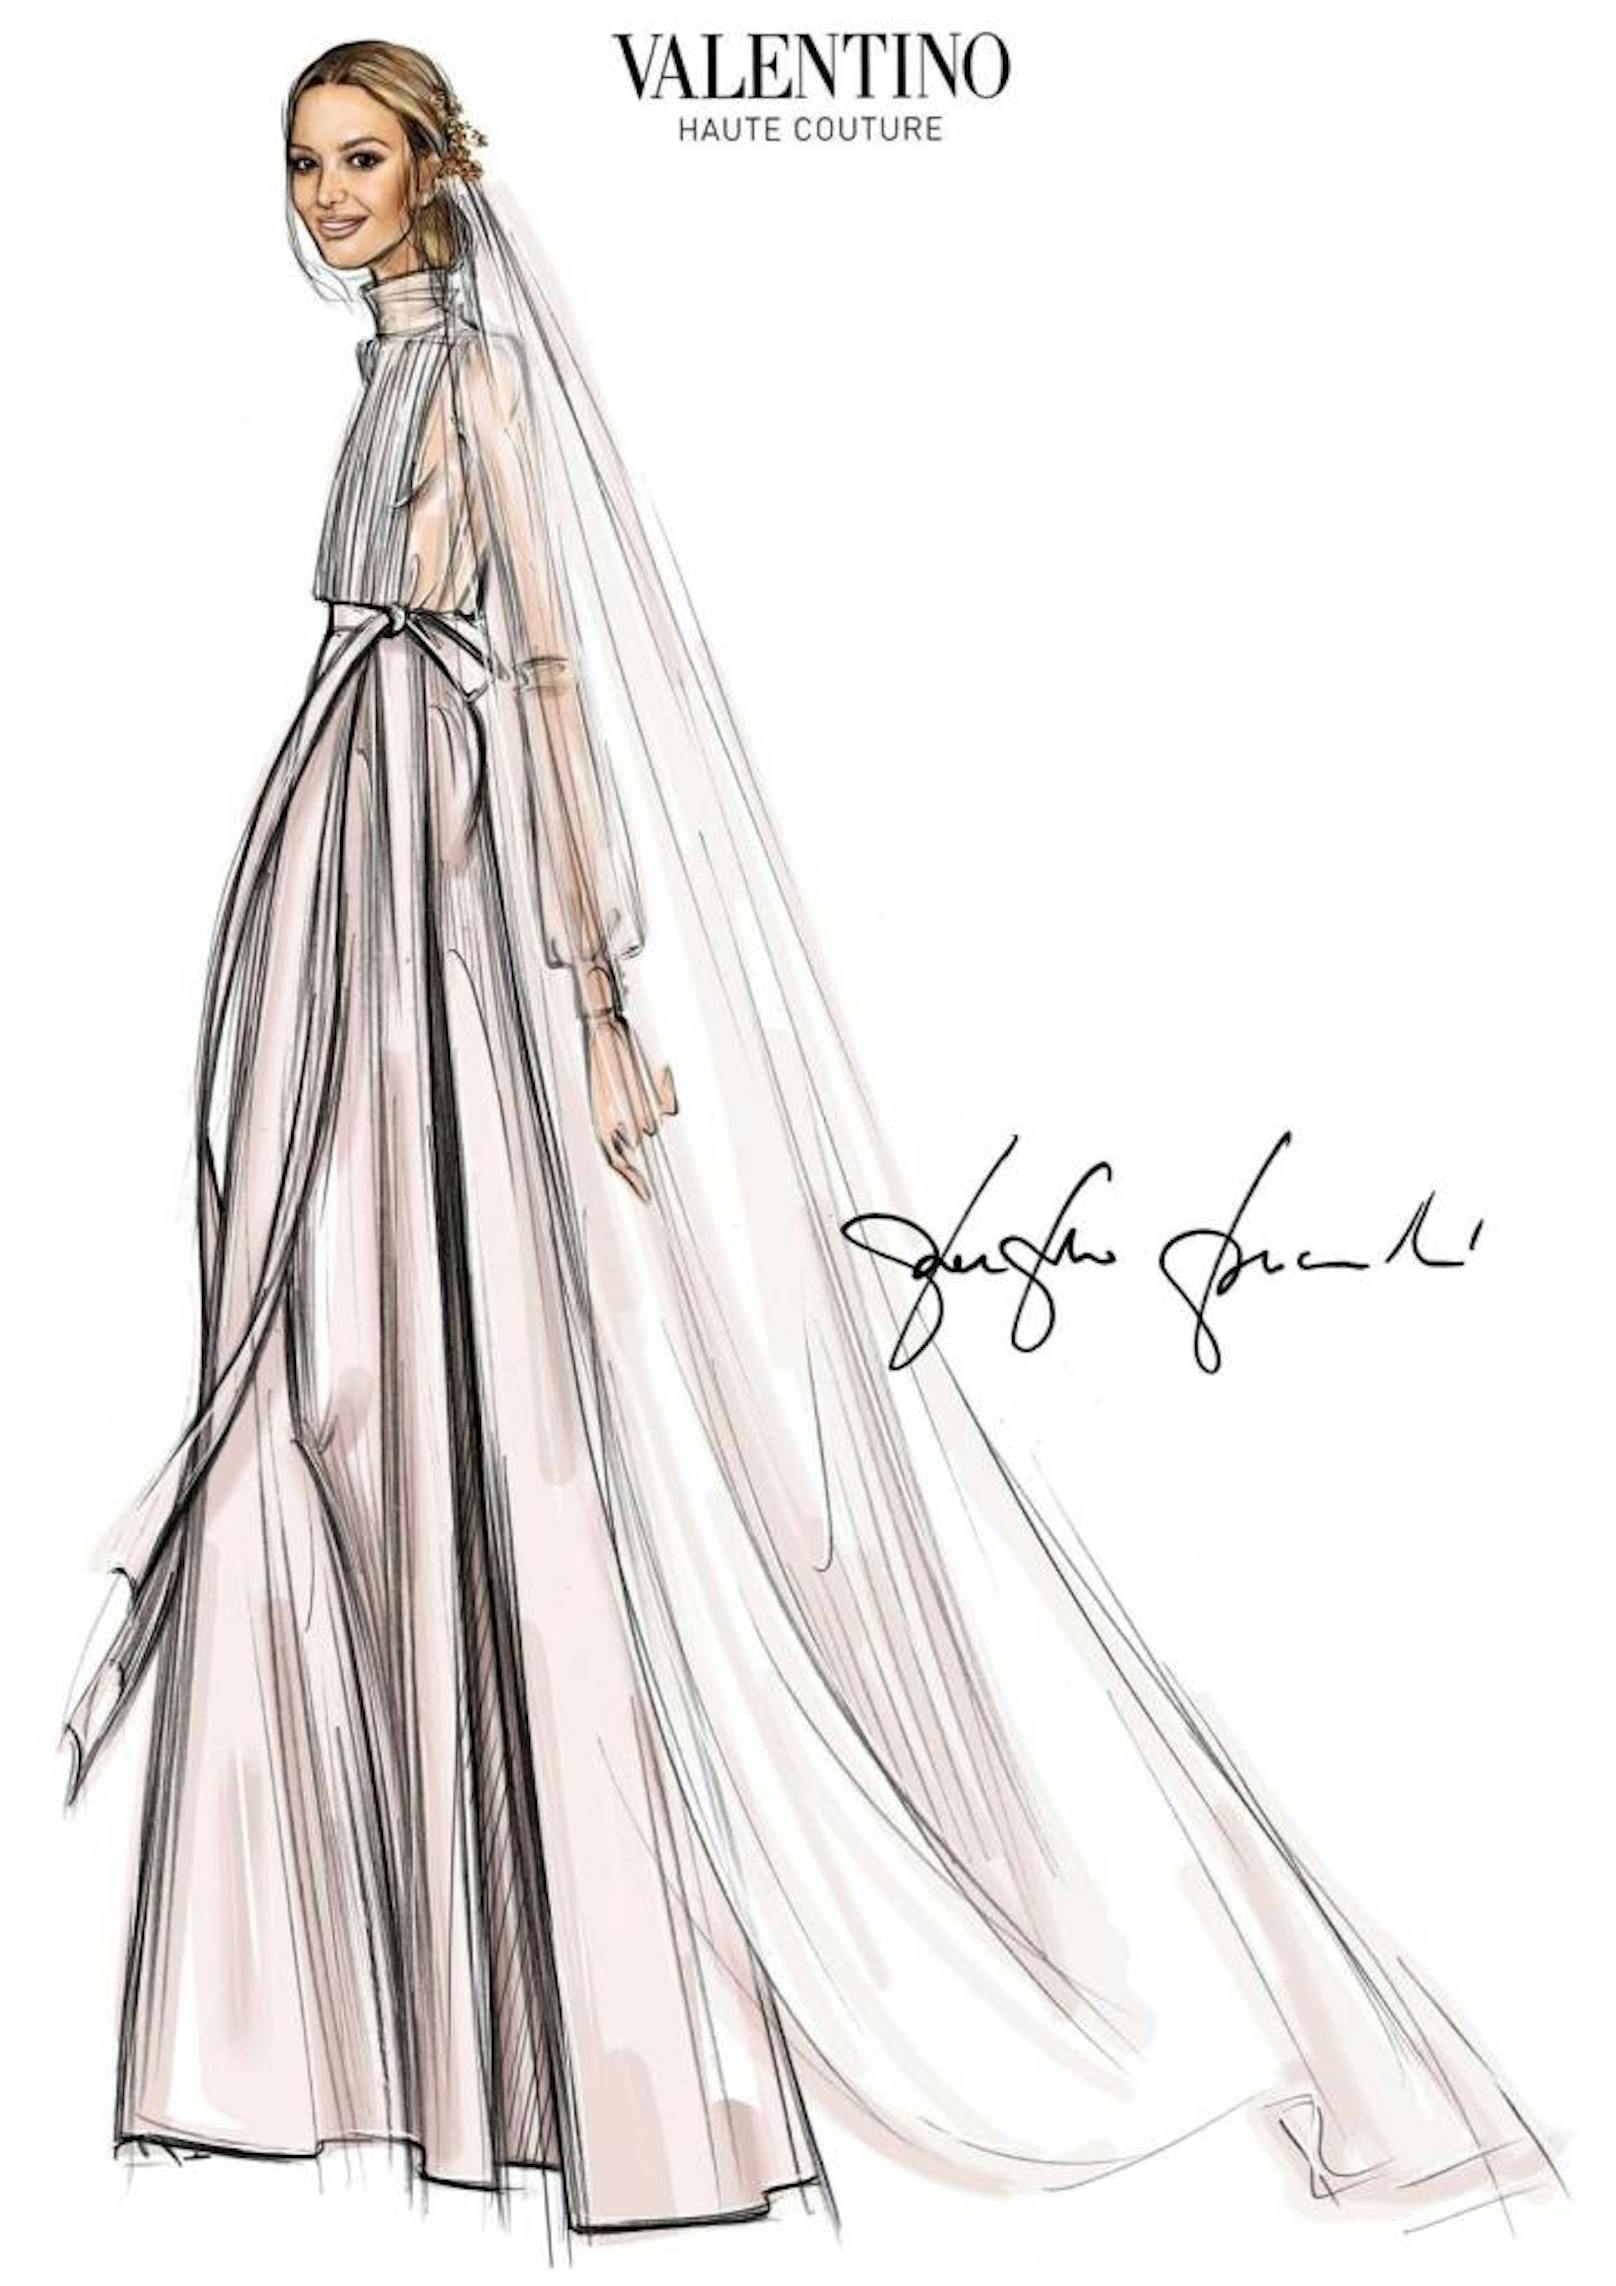 Das Modehaus Valentino präsentierte im Anschluss an die Hochzeit auch eine Skizze des Kleides